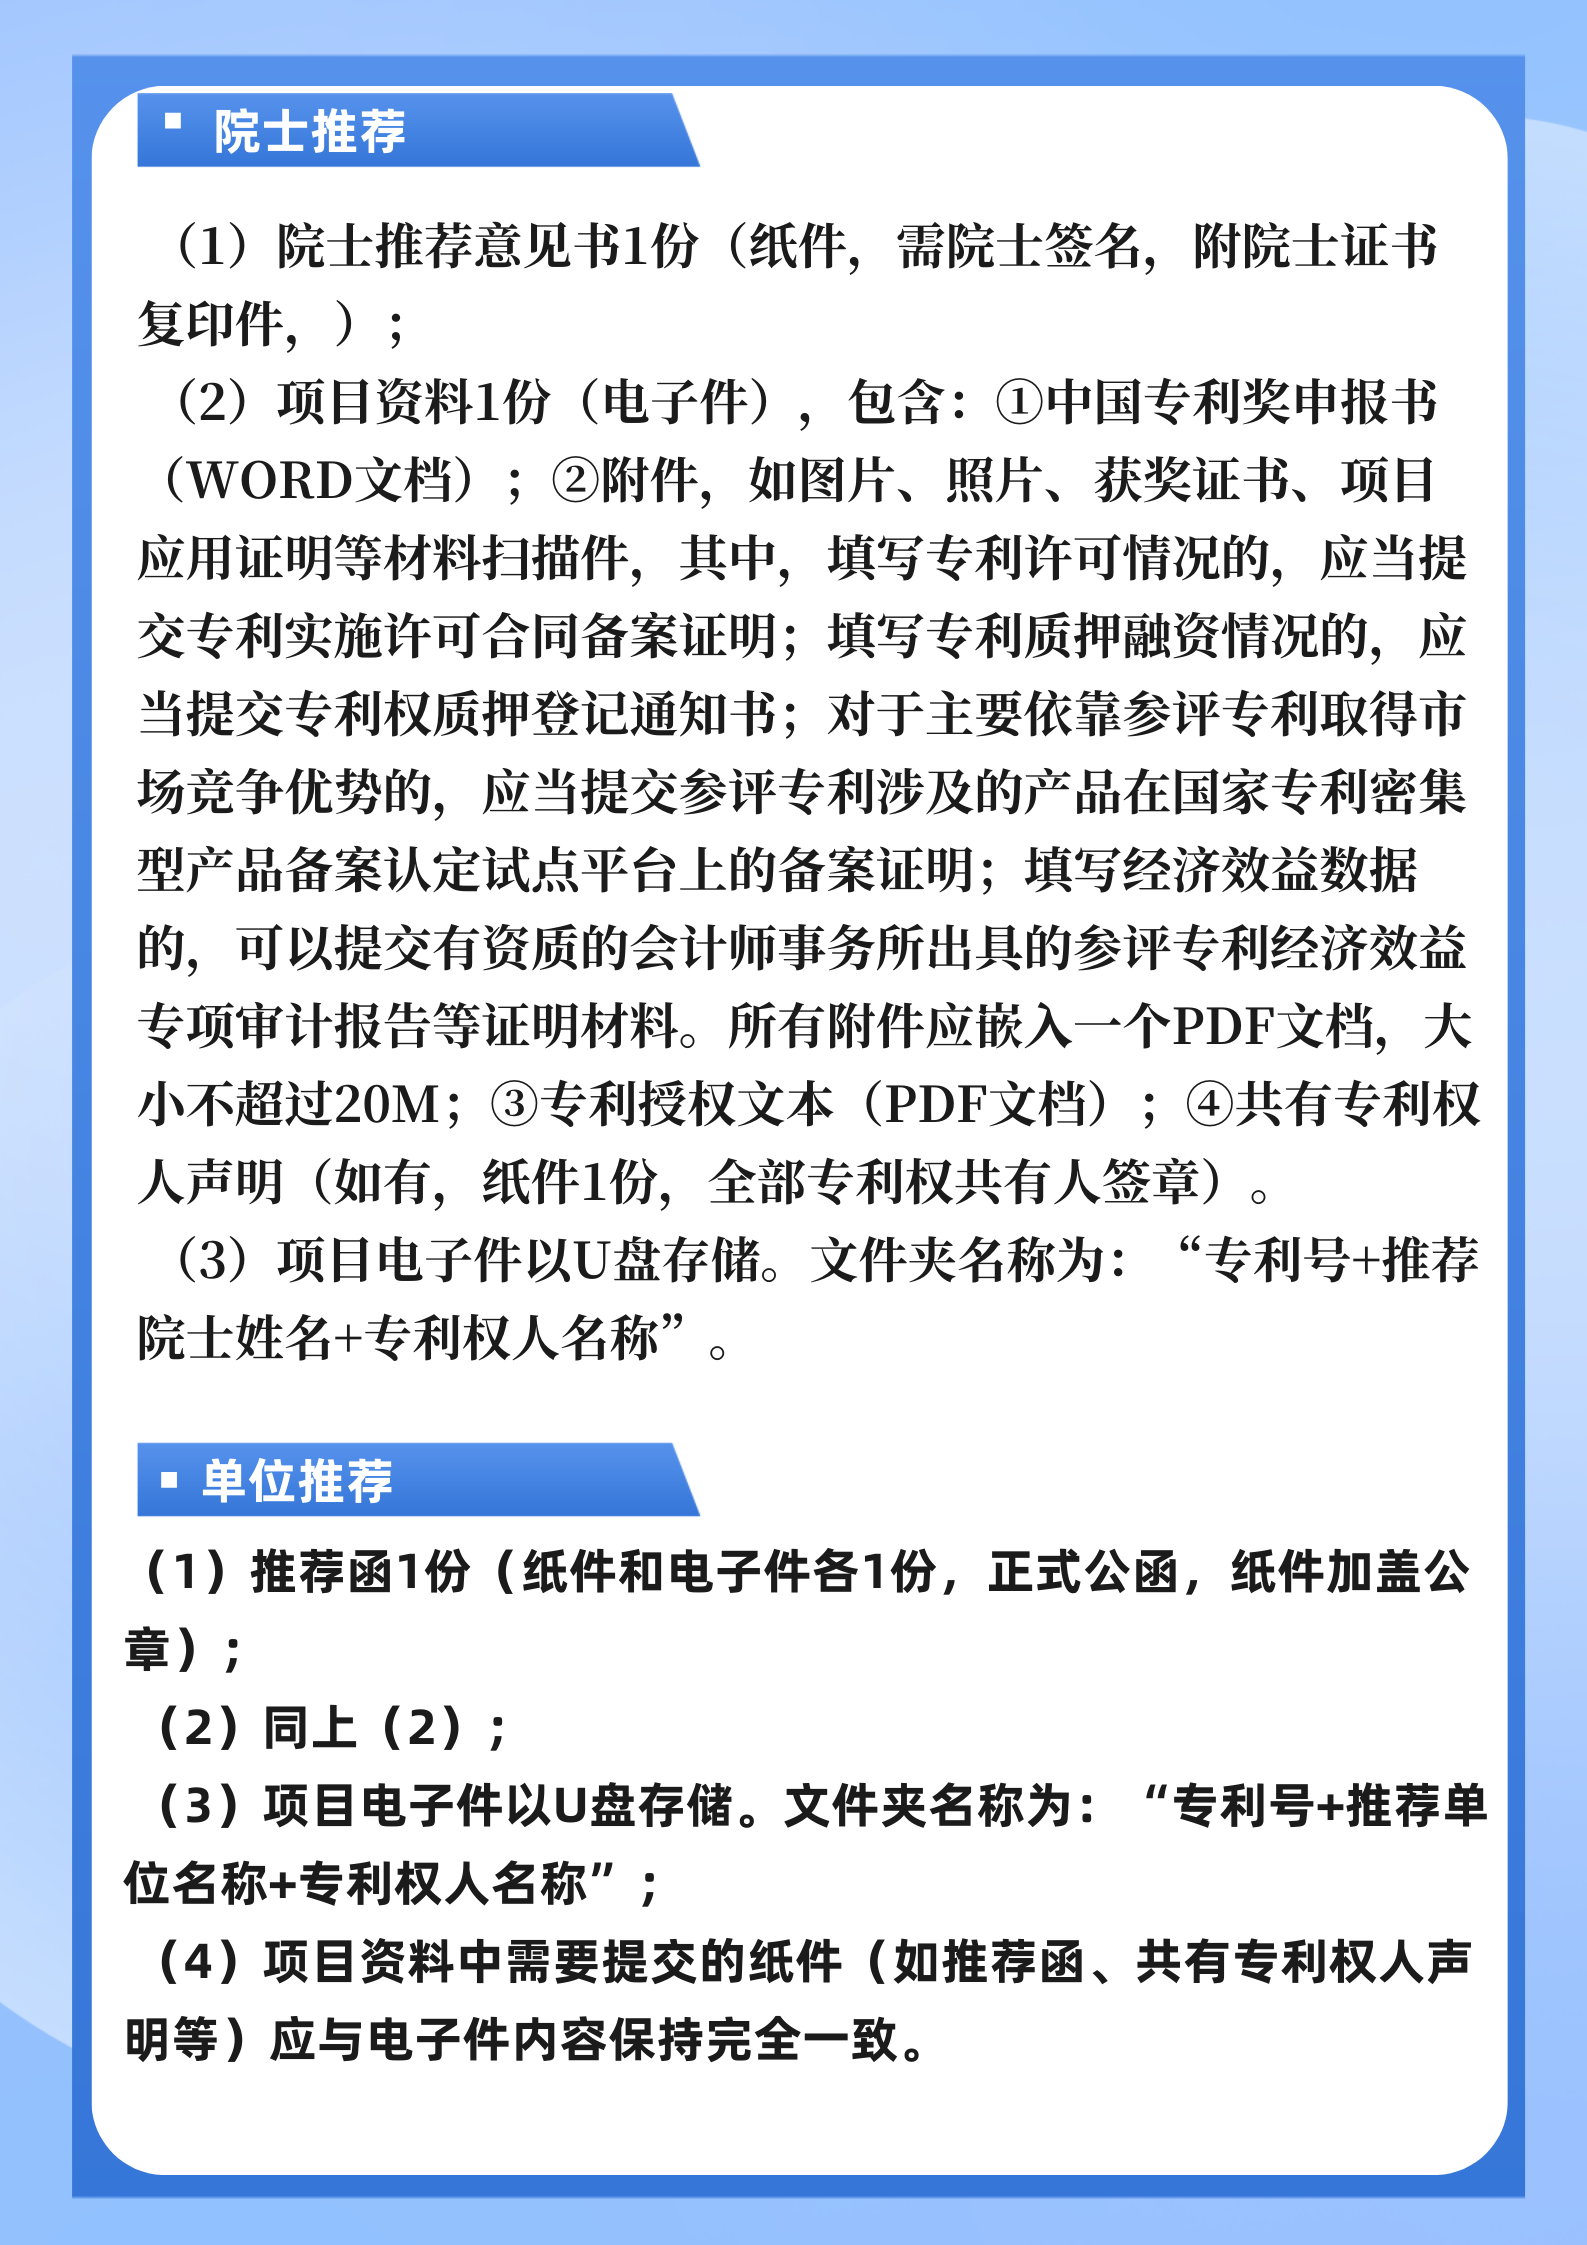 重要|北京地区中国专利奖申报推荐工作通知